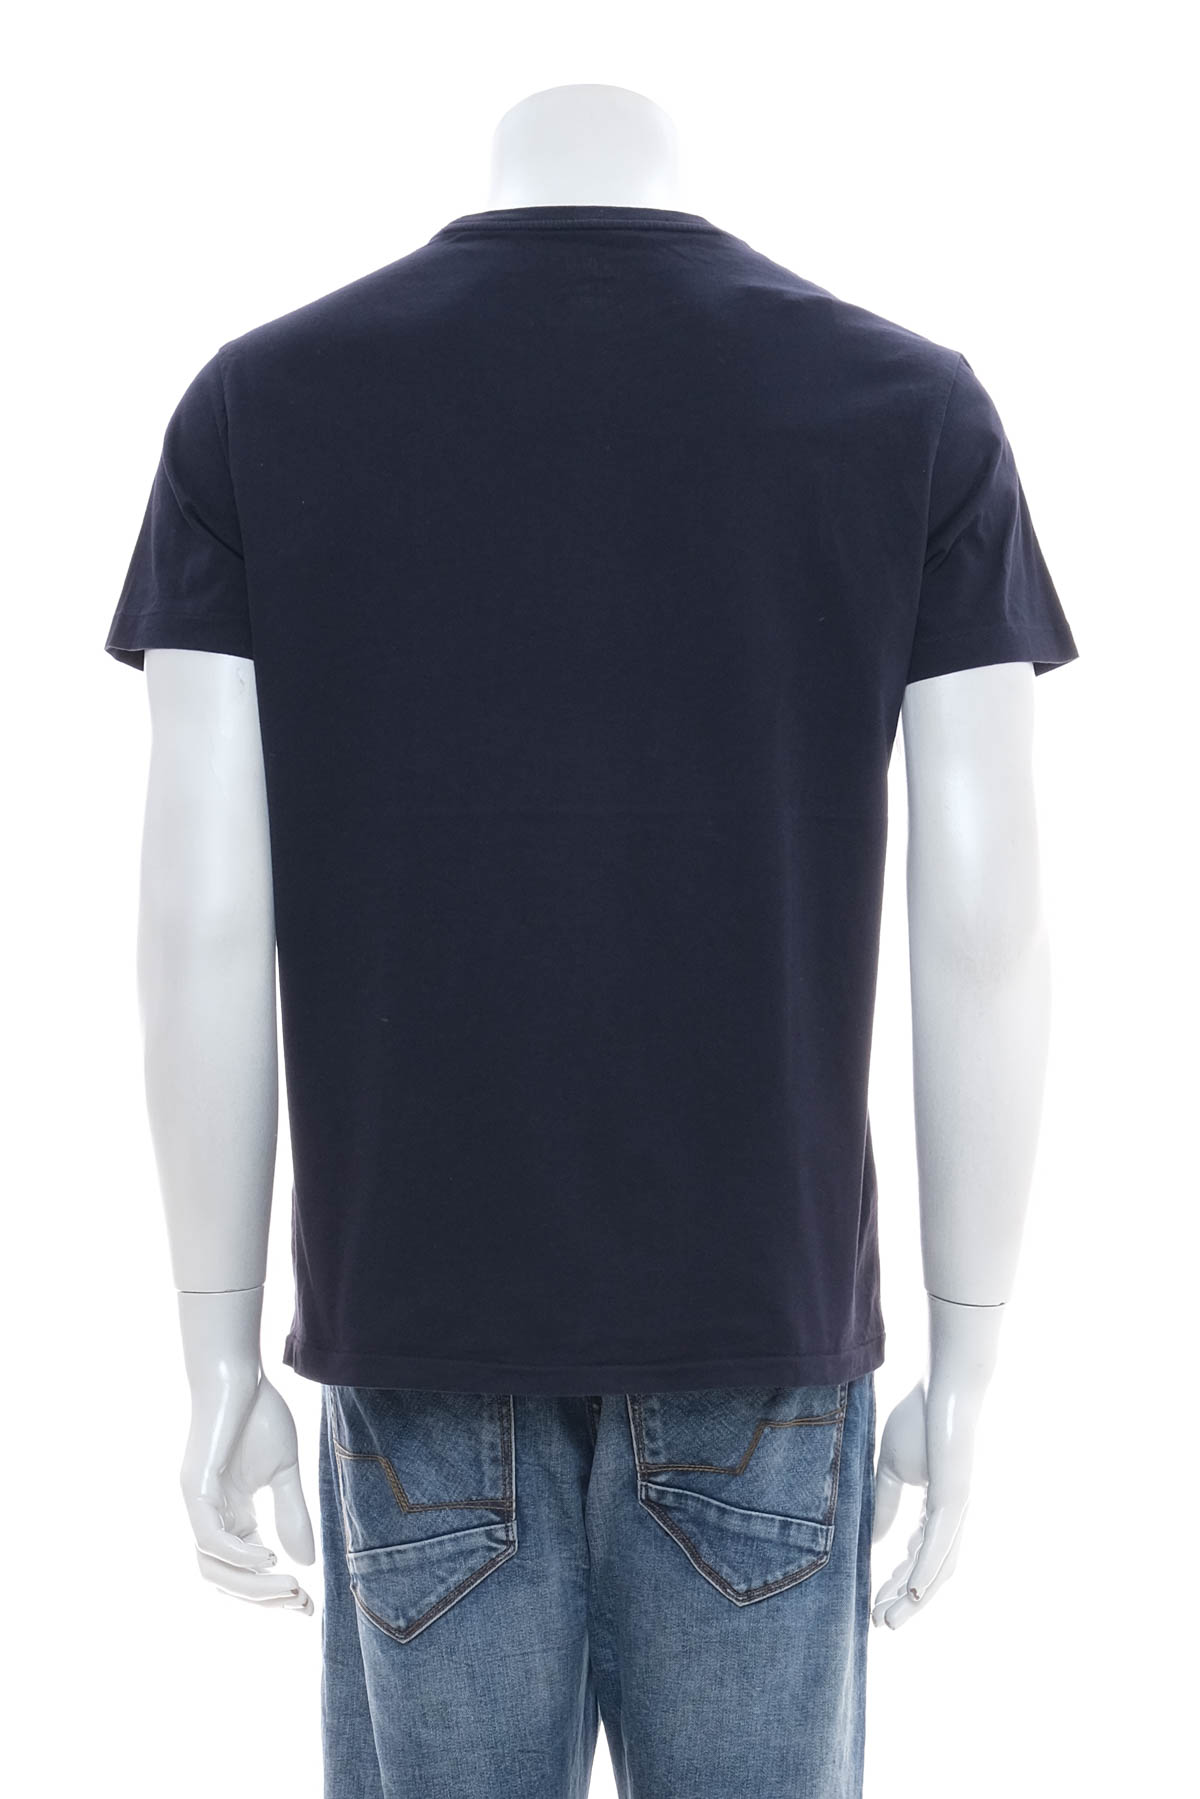 Αντρική μπλούζα - Ralph Lauren - 1